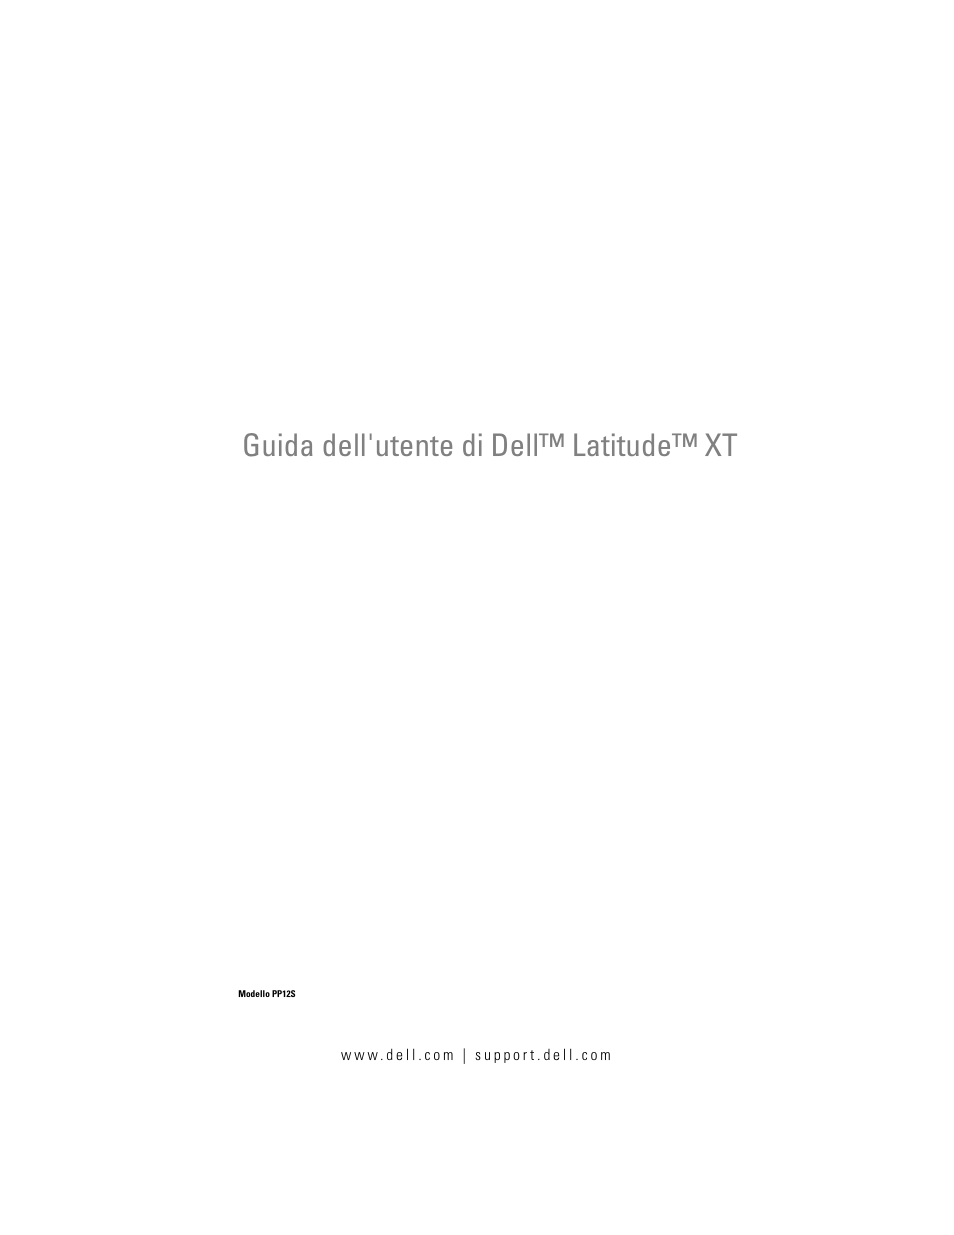 Dell Latitude XT (Late 2007) Manuale d'uso | Pagine: 262